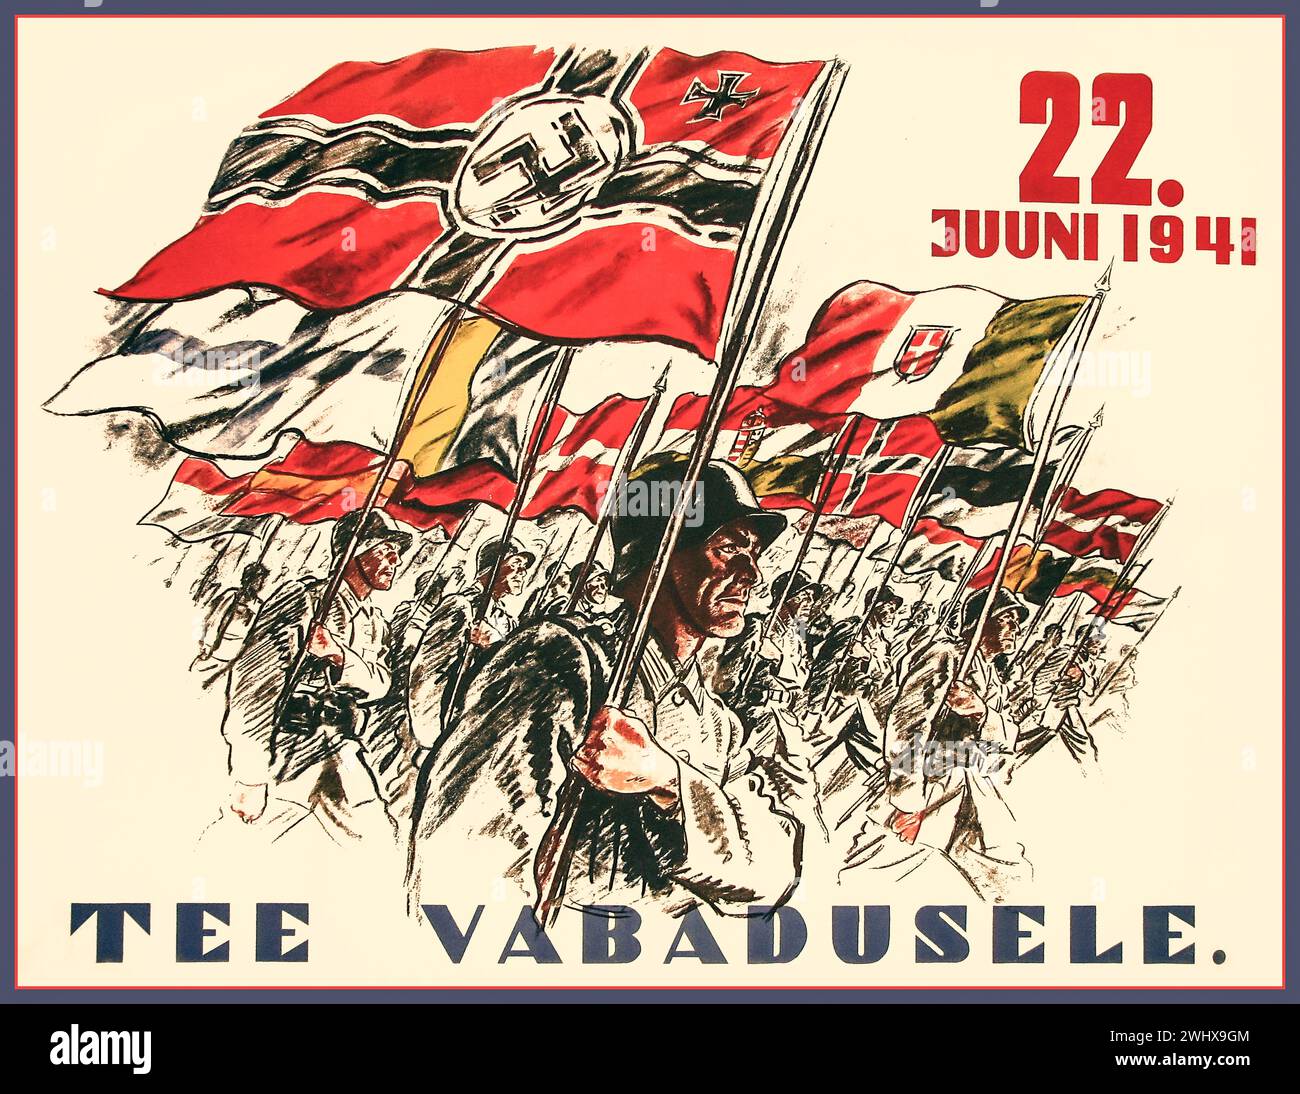 Nazi-Deutschland-Propaganda-Poster mit Flaggen von Kontinentaleuropa. "Der Kreuzzug gegen den Bolschewismus" vom 22. Juni 1941 Titel: WEG ZUR FREIHEIT (Estland) an diesem Tag startete Adolf Hitler die OPERATION BARBAROSSA, die Invasion der Sowjetunion am 22. Juni 1941 Stockfoto